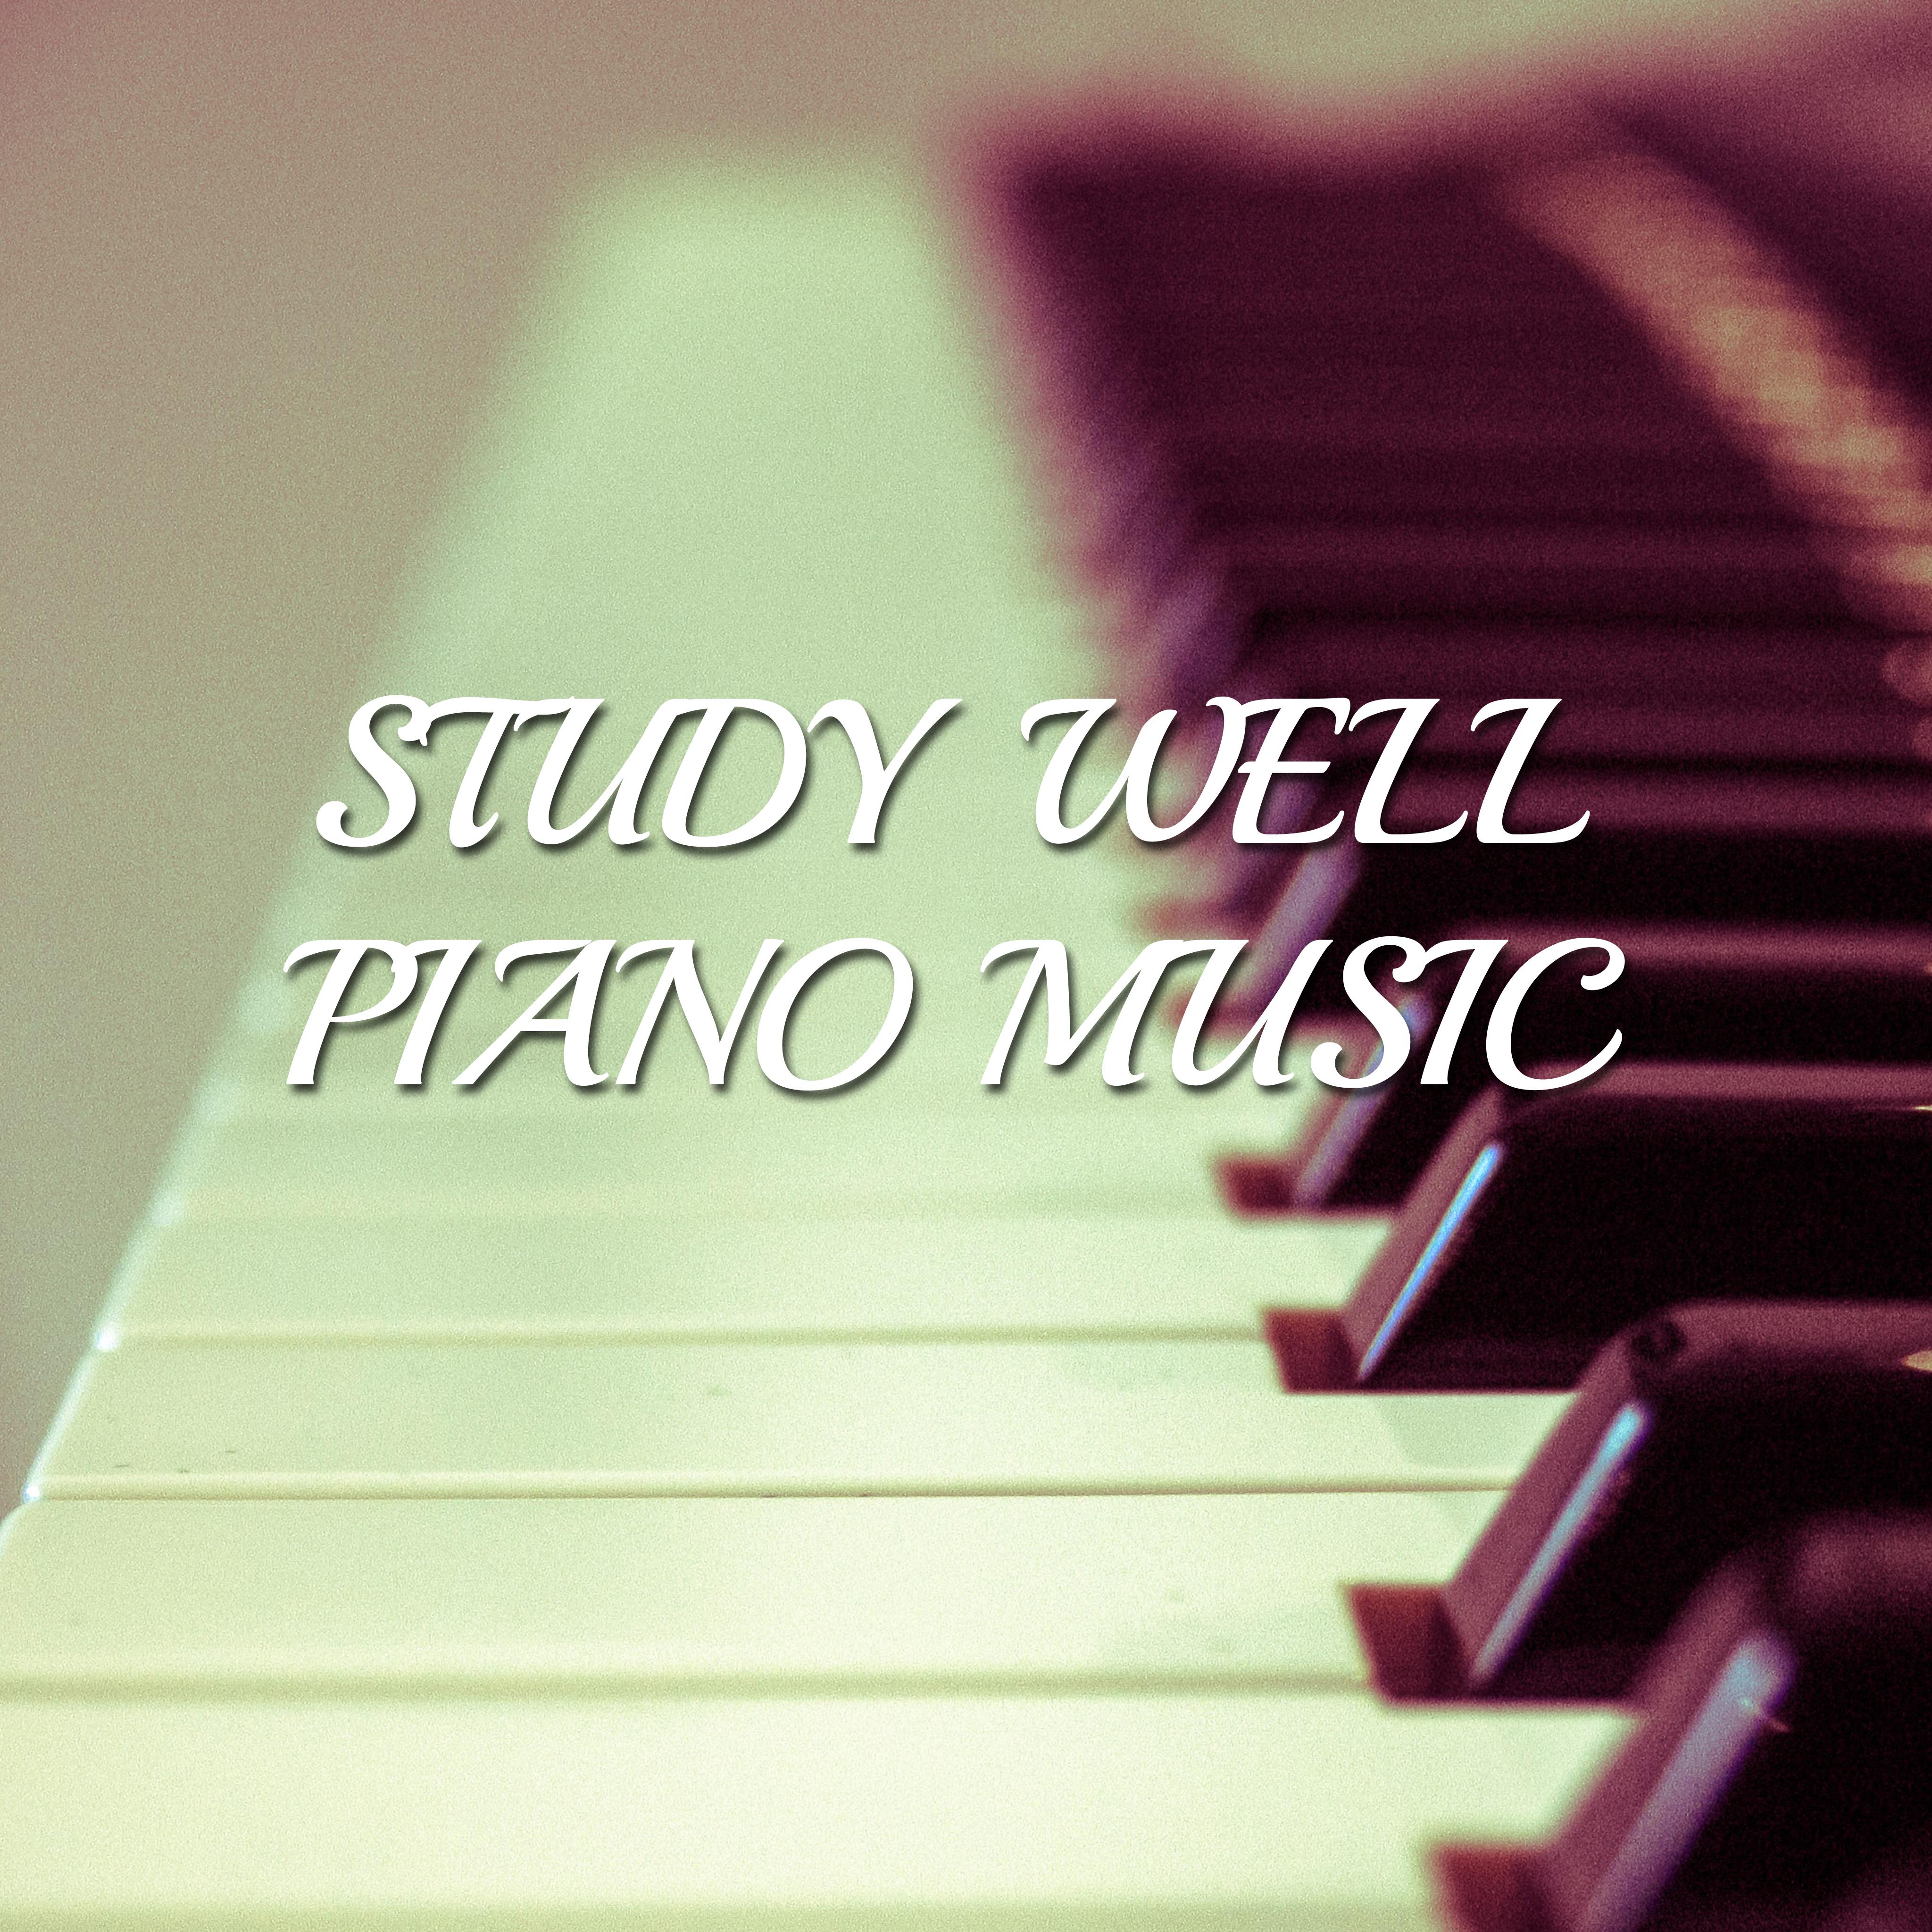 14 Study Well Piano Music